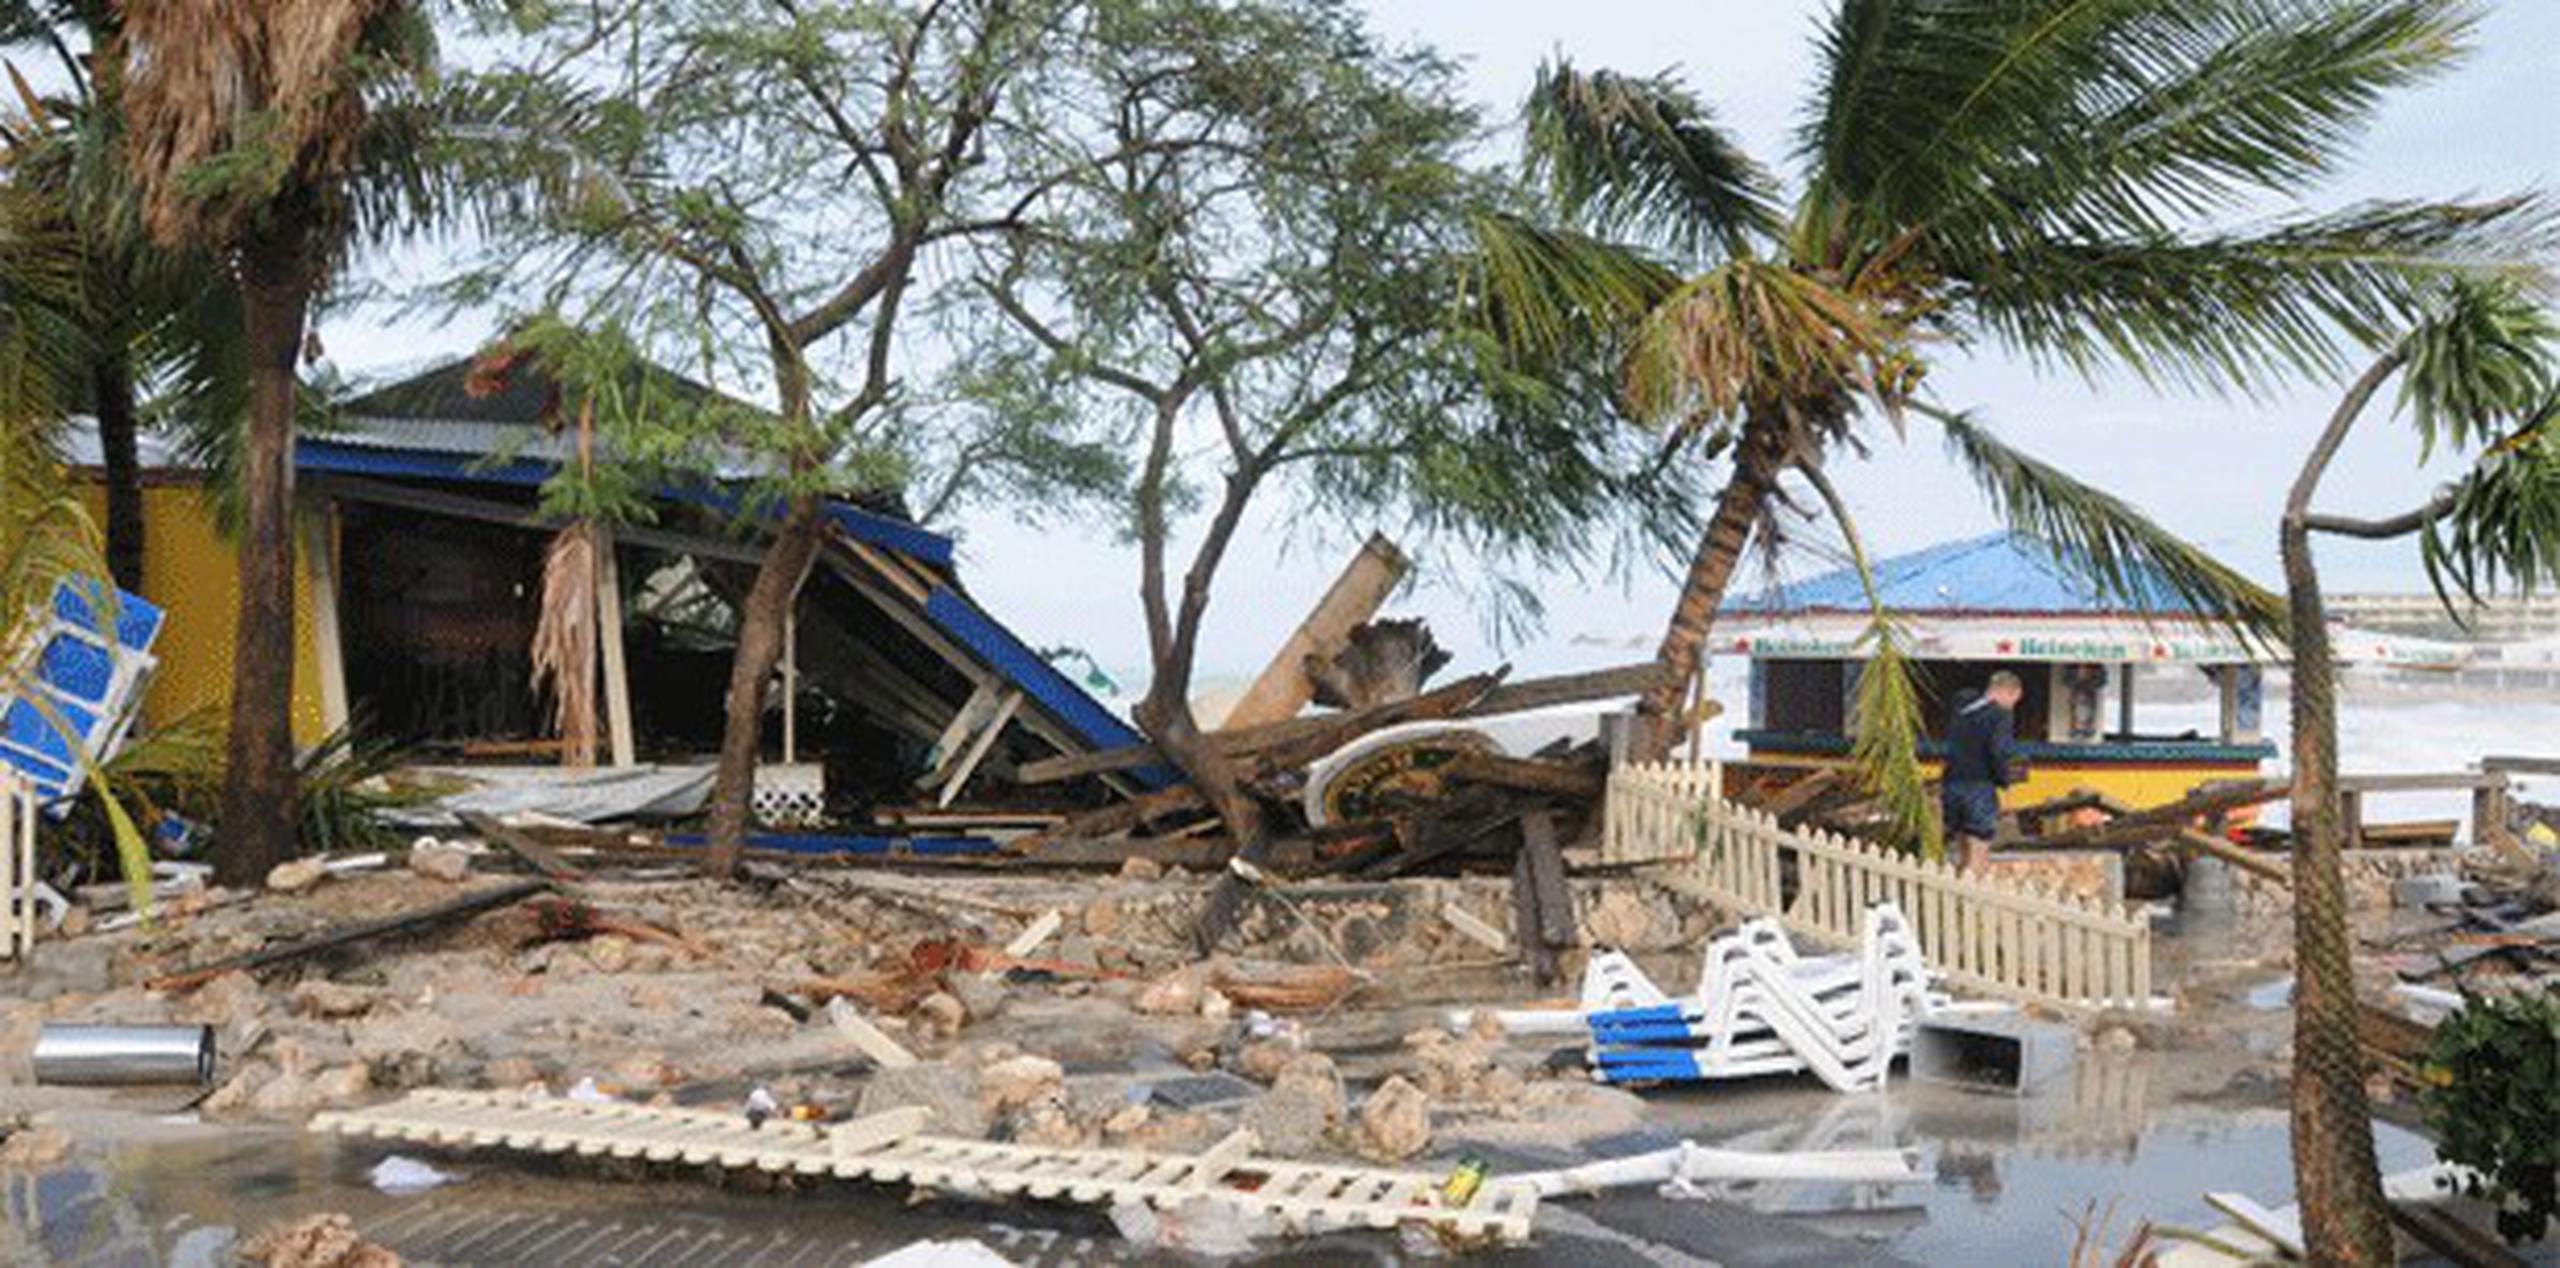 En 2008, el huracán Omar pasó cerca de Puerto Rico y causó daño en las islas vecinas como en San Martín. Este años se volverá a utilizar ese nombre. (Archivo)